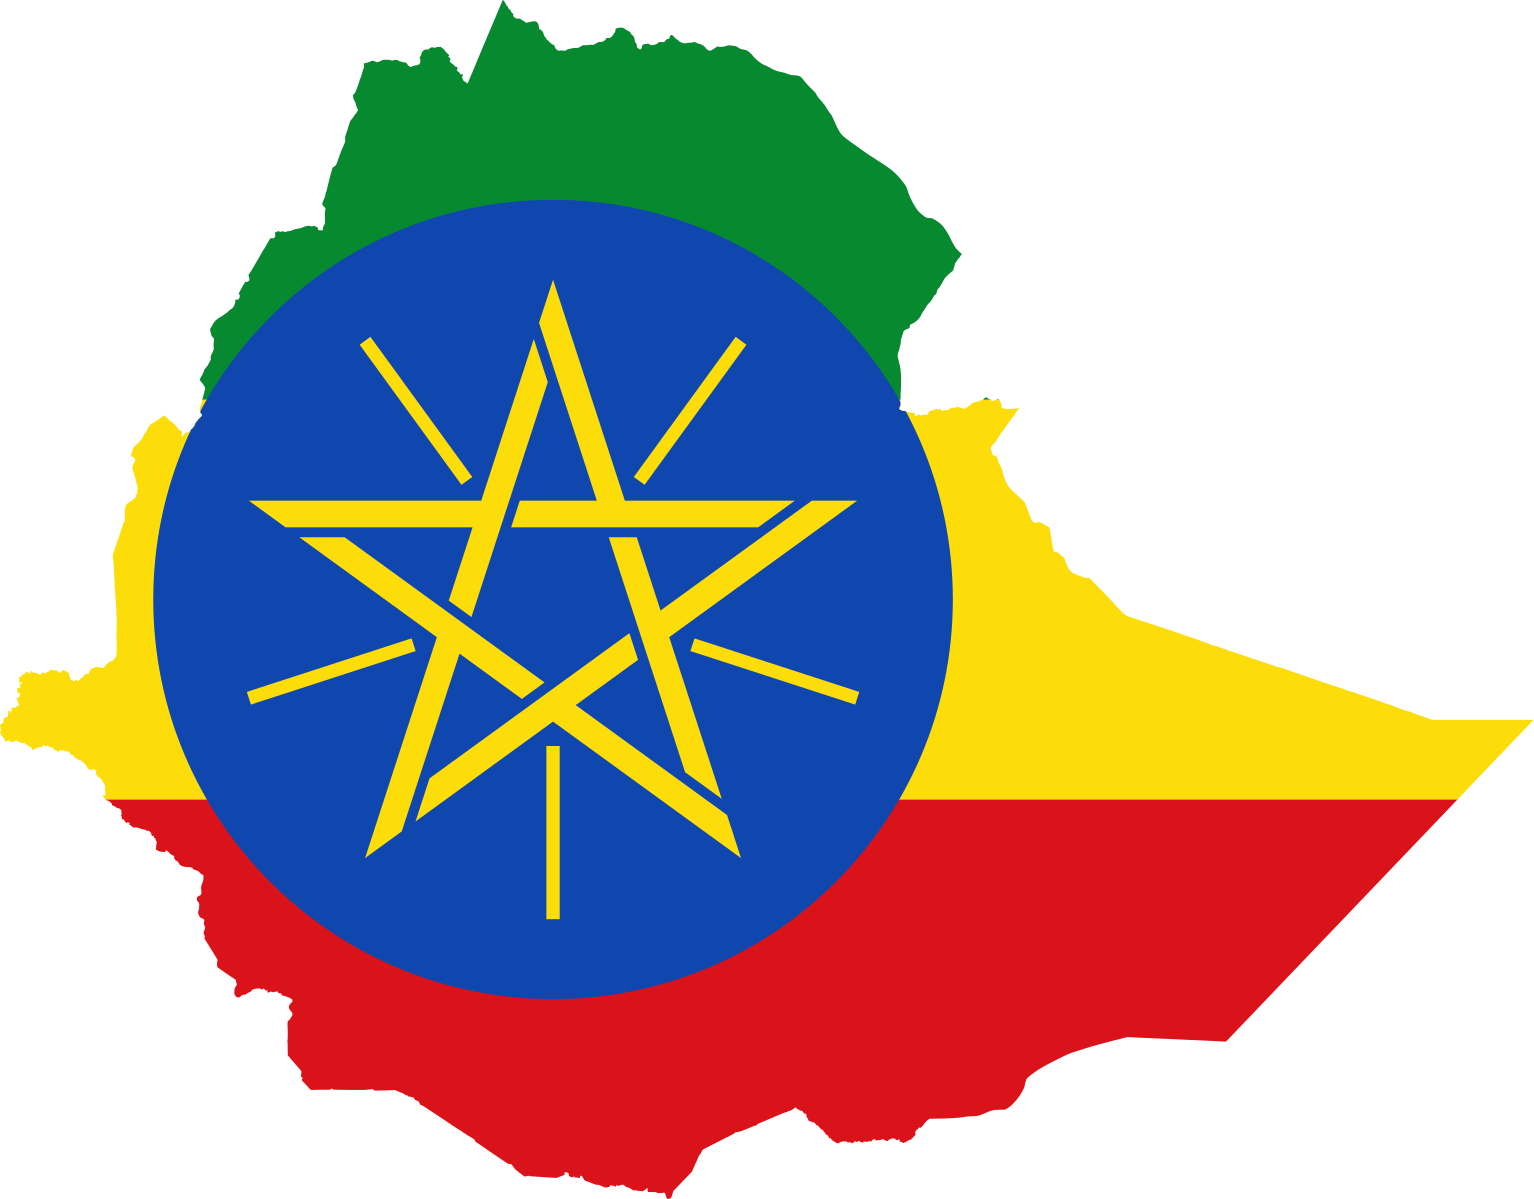 Soomaalida oo hadda kadib VISA la’aan ah u safri kara ETHIOPIA (Sharci cusub)